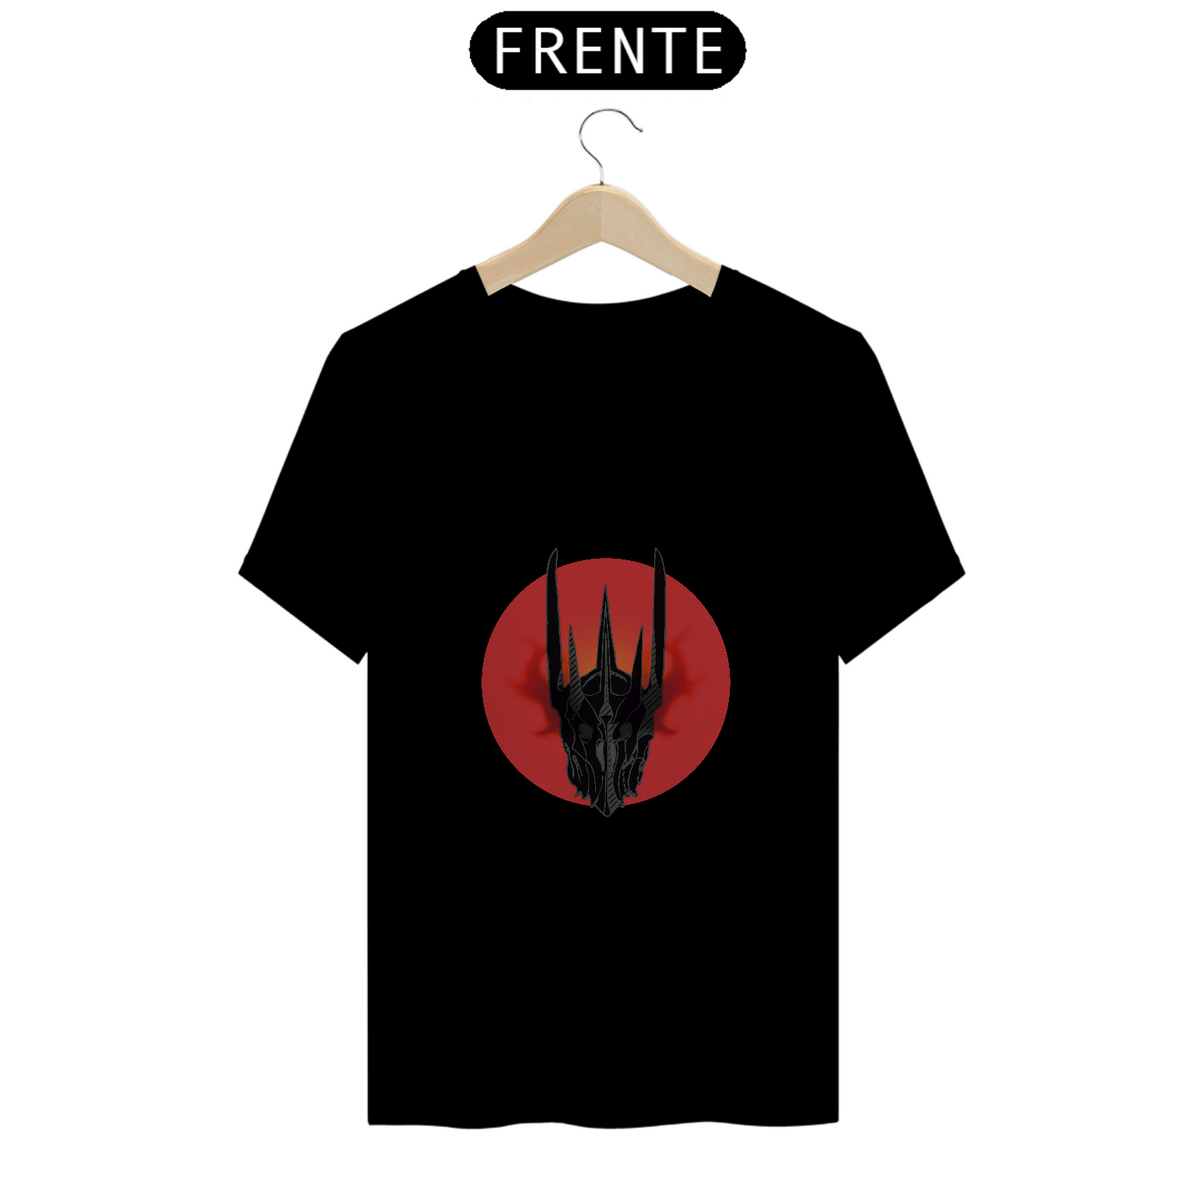 Nome do produto: T-Shirt | Olho de Sauron - O Senhor dos Anéis